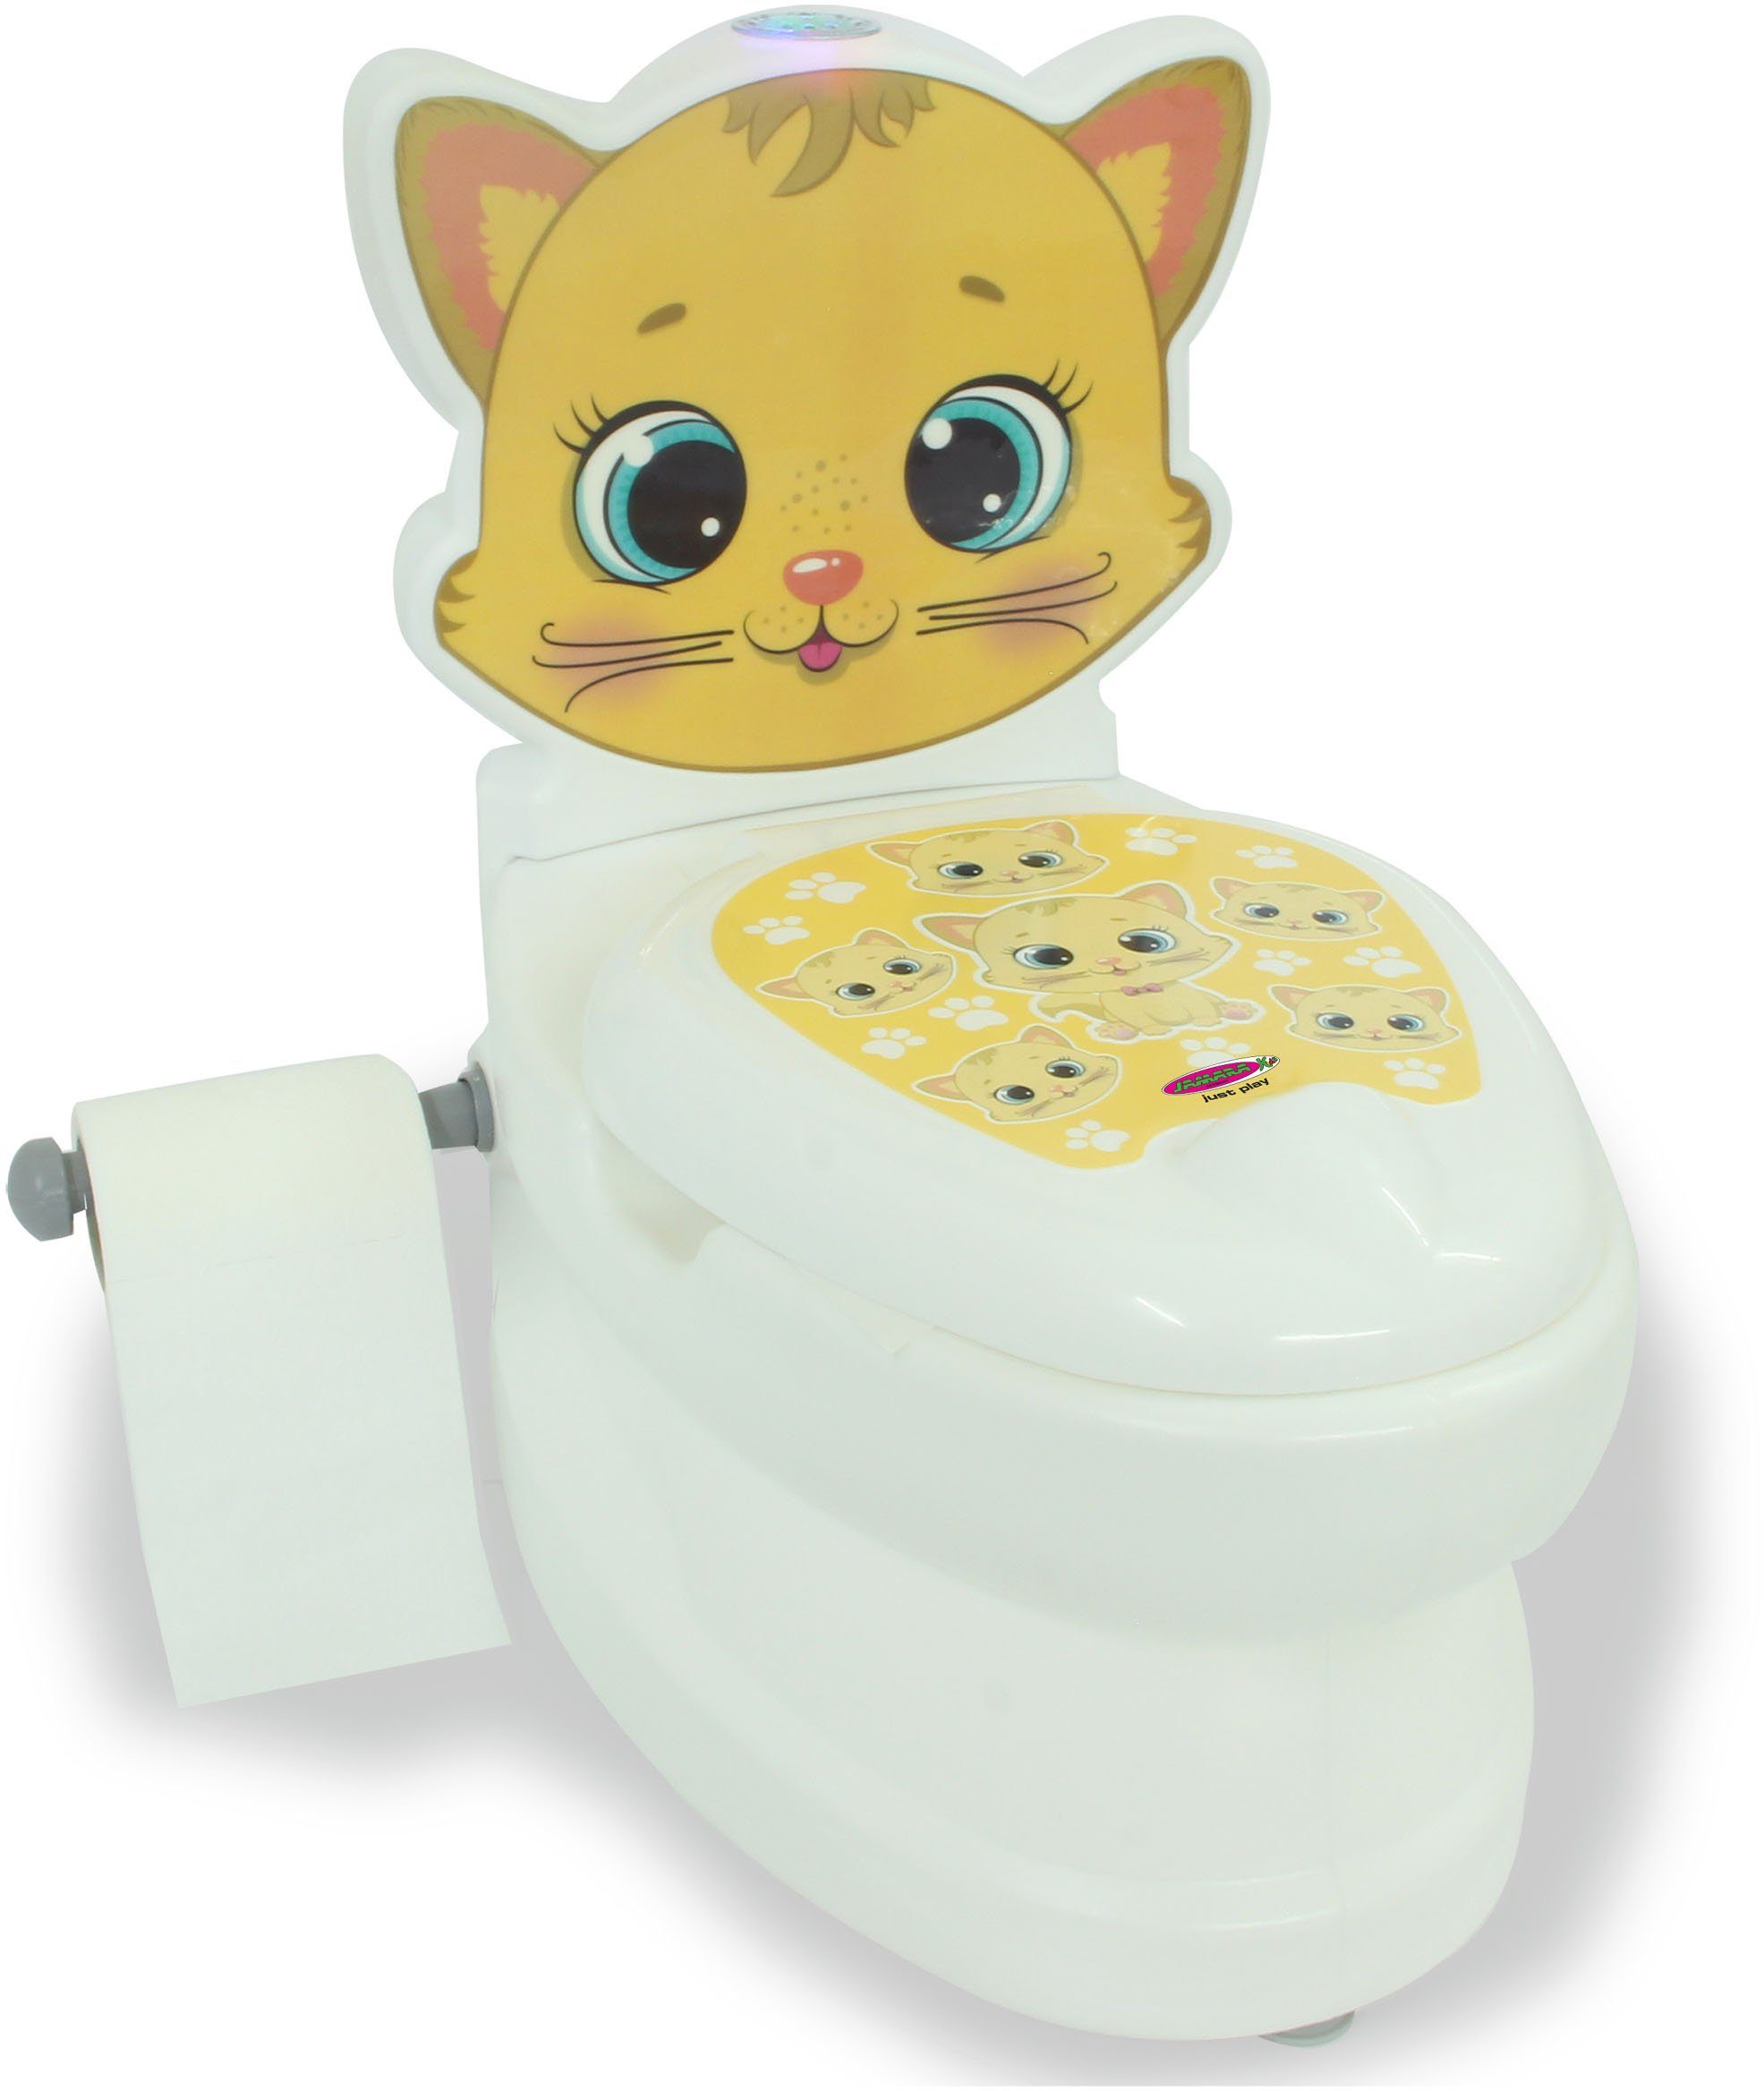 Jamara Toilettentrainer Meine kleine Toilette, Katze, mit Spülsound und  Toilettenpapierhalter, Behältnis kann zur Reinigung separat herausgenommen  werden